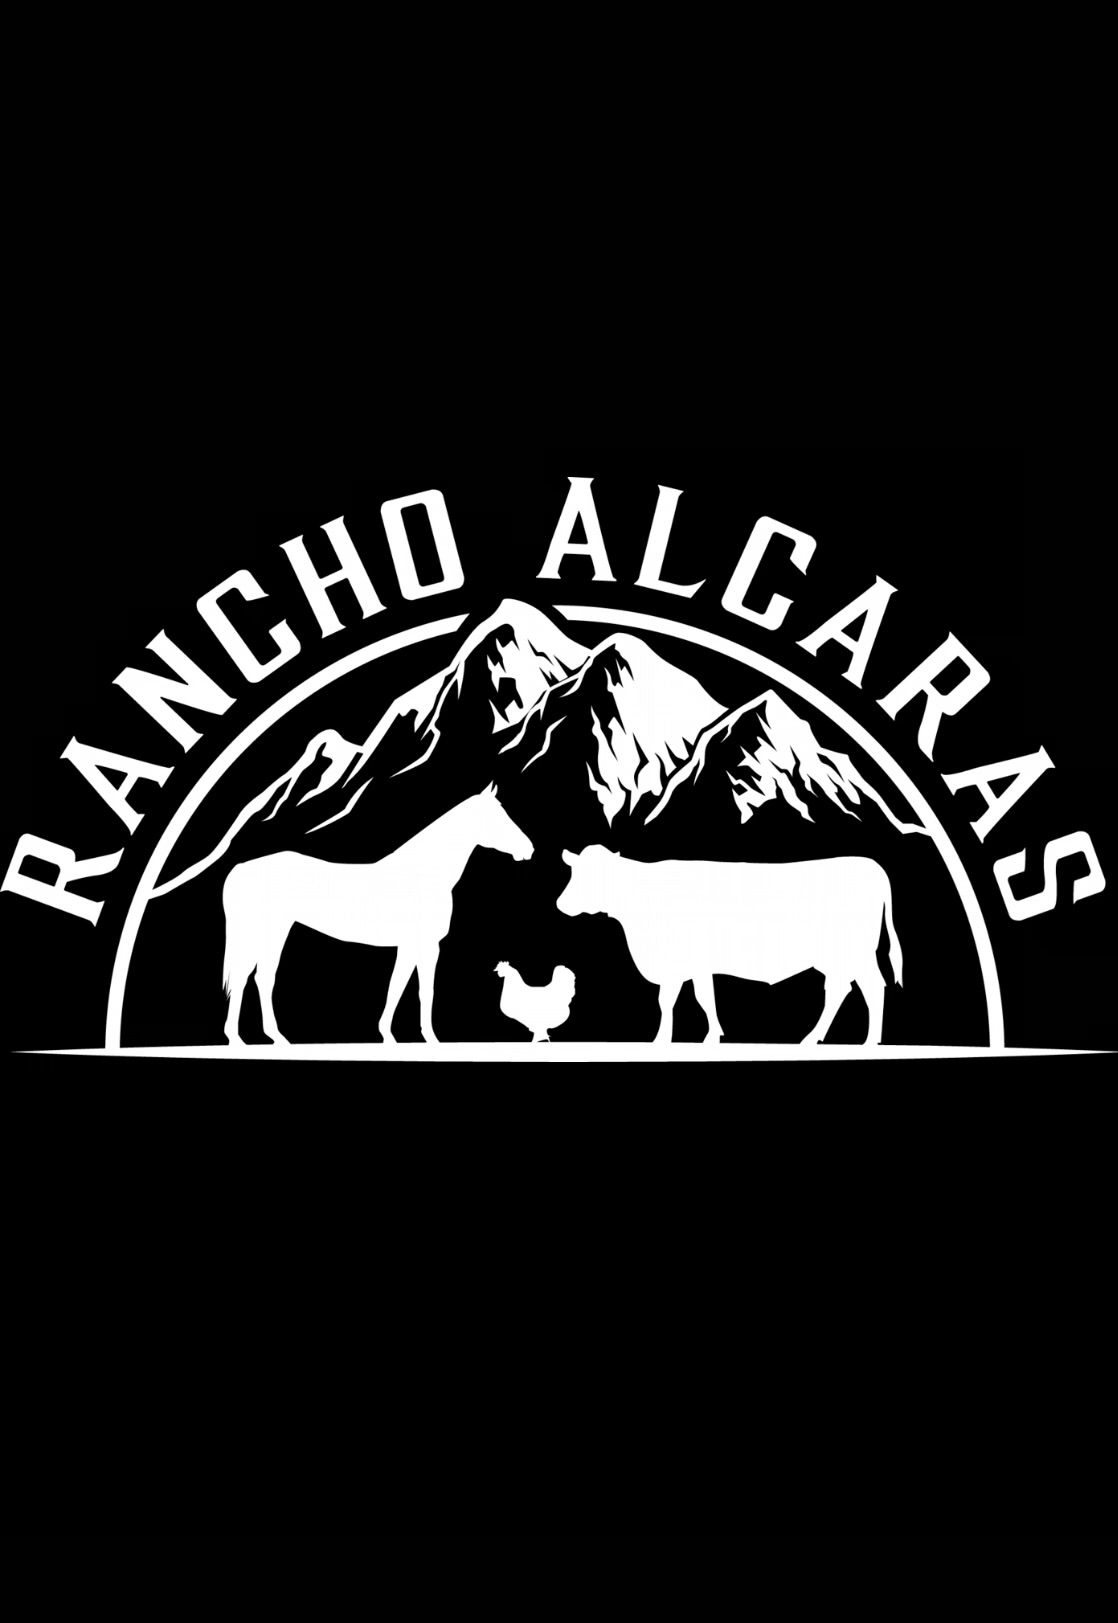 Rancho Alcaras